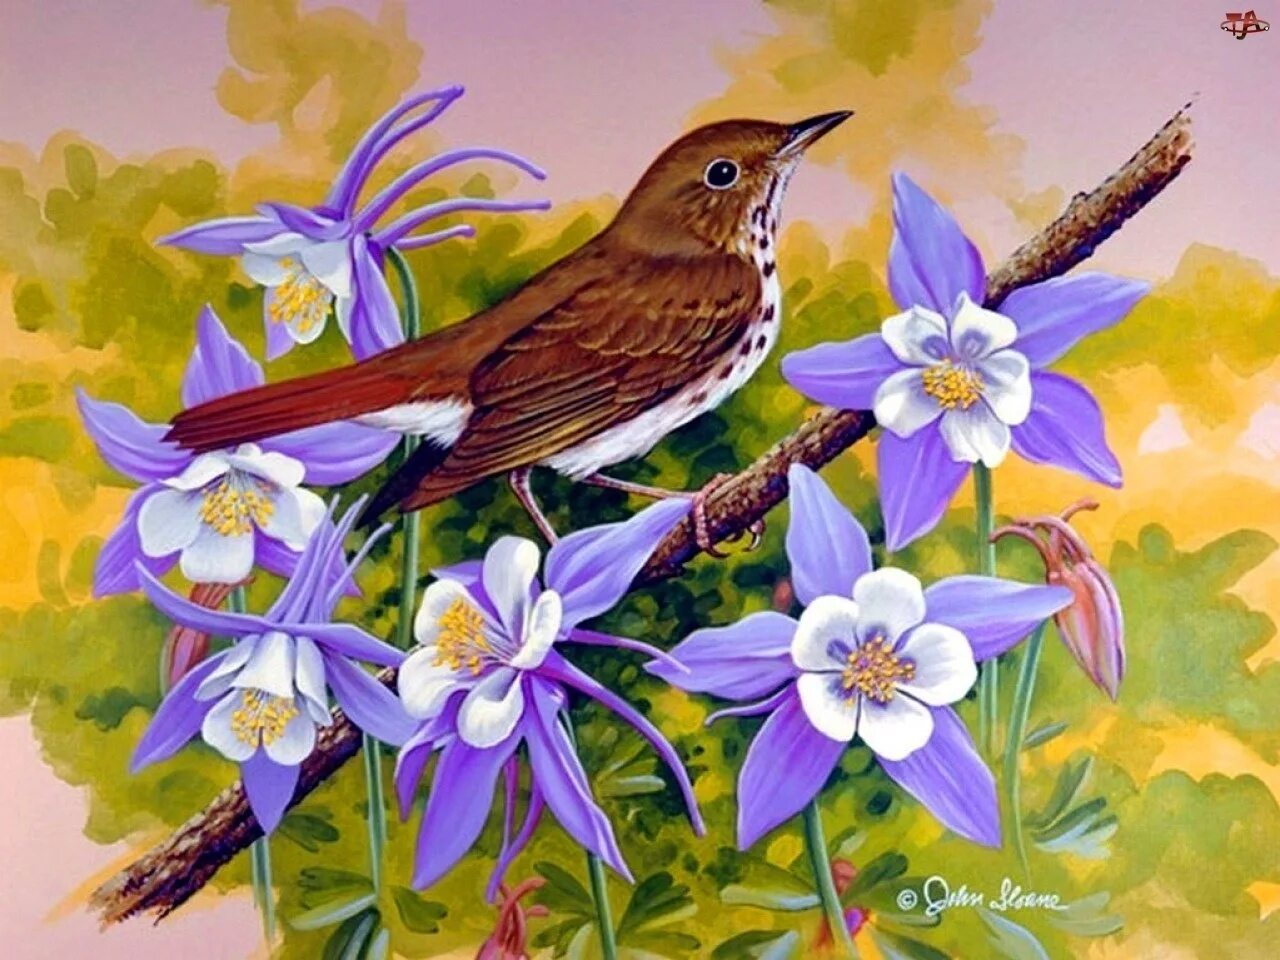 Род произведения песня соловья. Джон Слоан цветы. Джон френч Слоан художник птички. Птицы весной. Птицы в цветах в живописи.